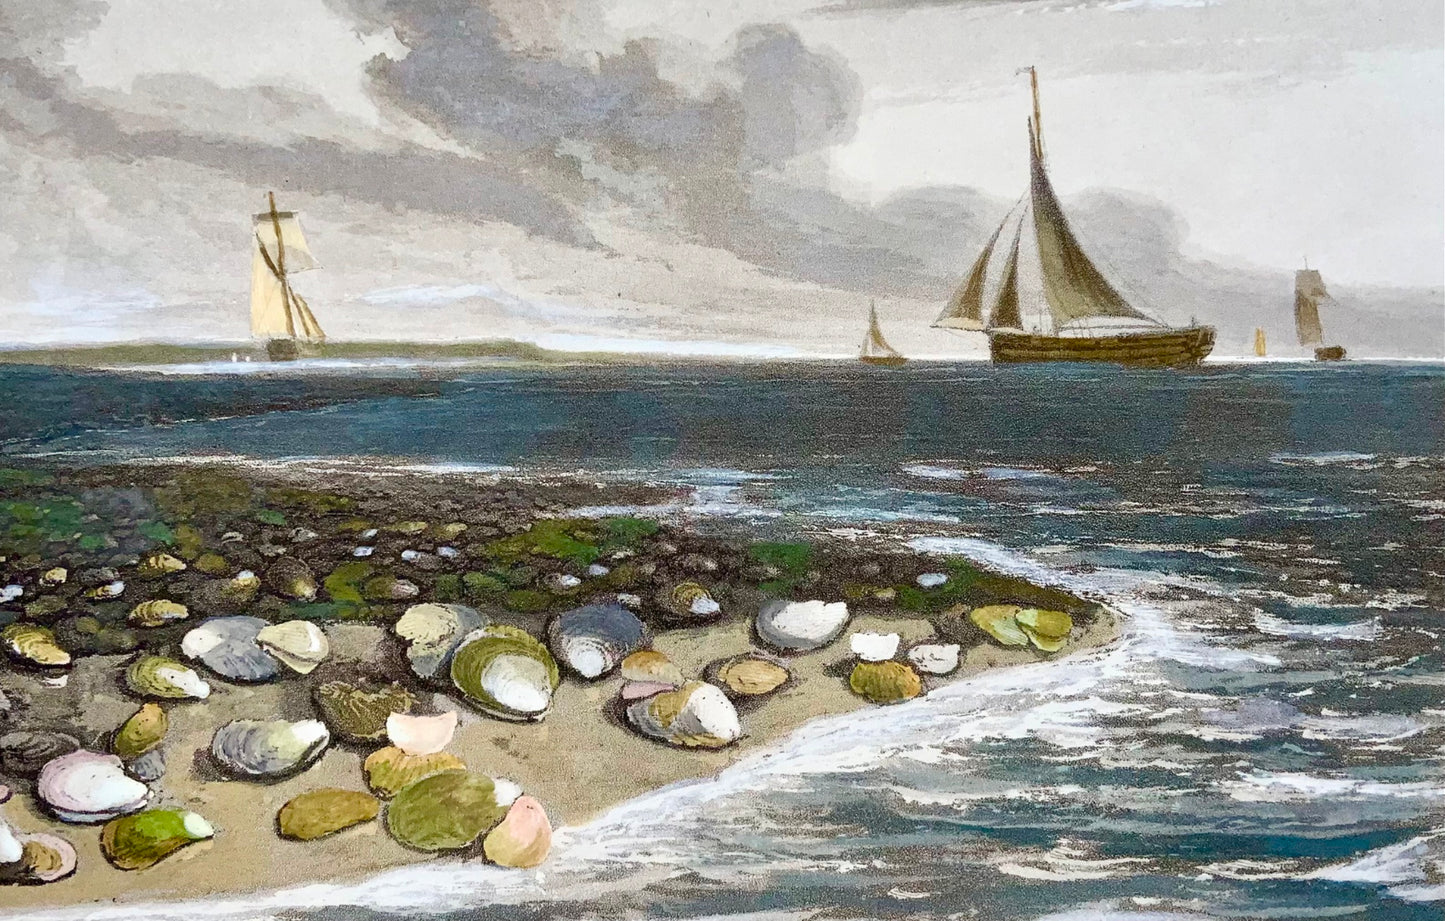 1809 William Daniell, Huîtres, marines, aquatinte colorée à la main, aquatique